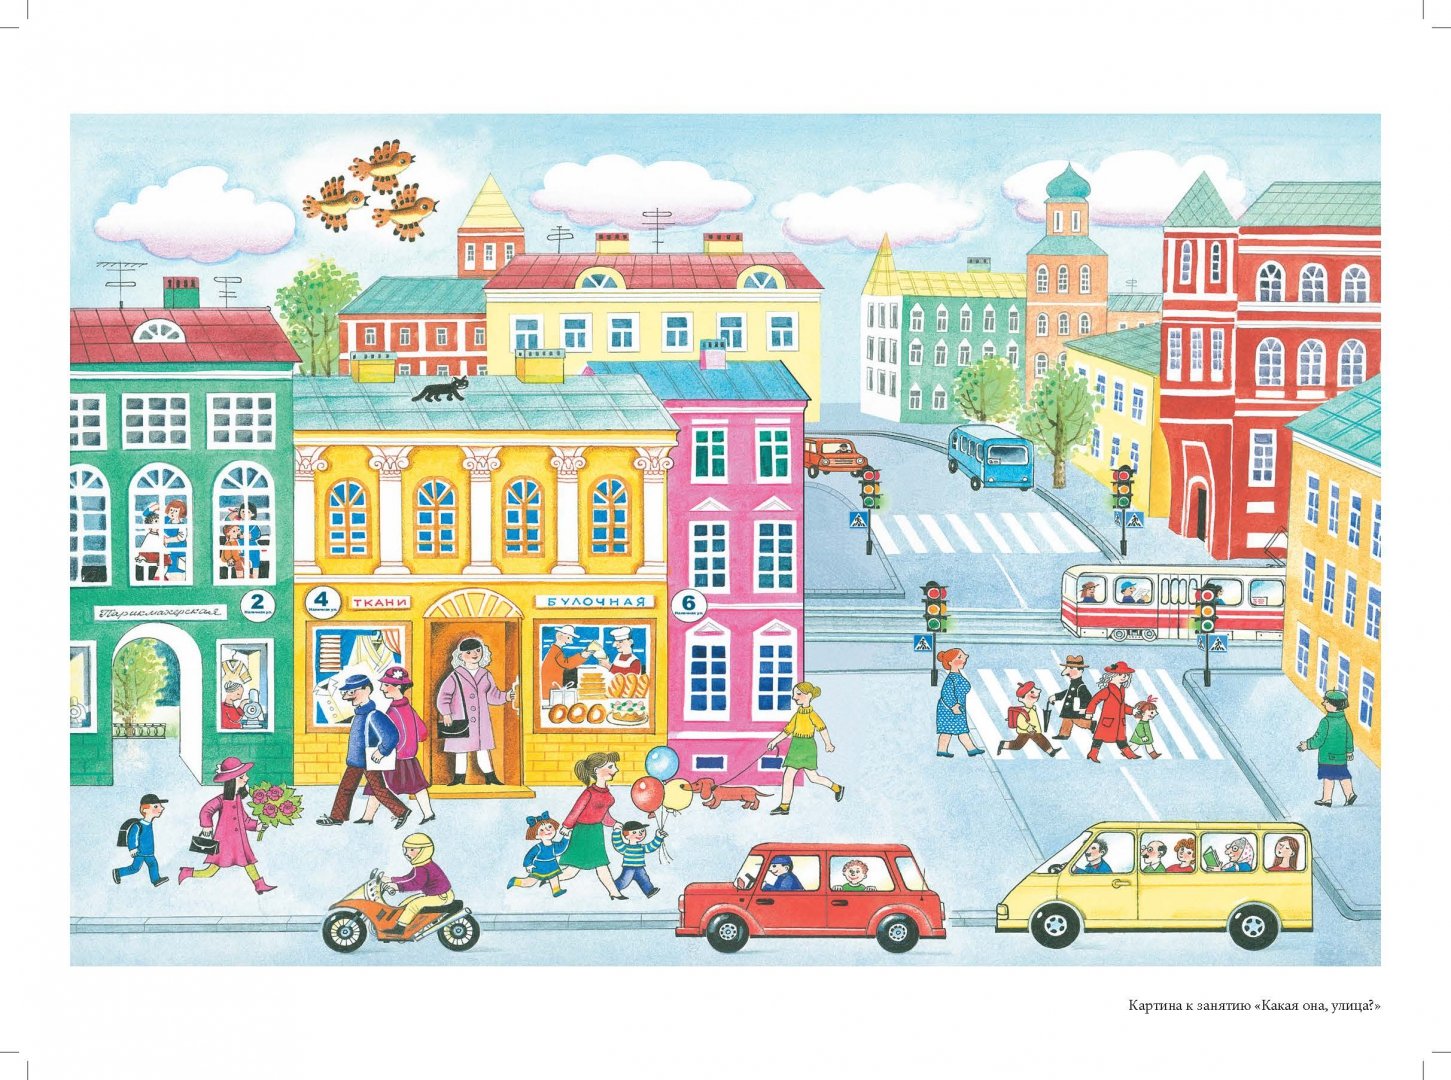 Назови улицу и дом. Дети в городе. Иллюстрации домов в городе для детей. Город иллюстрация. Иллюстрация города для детей.